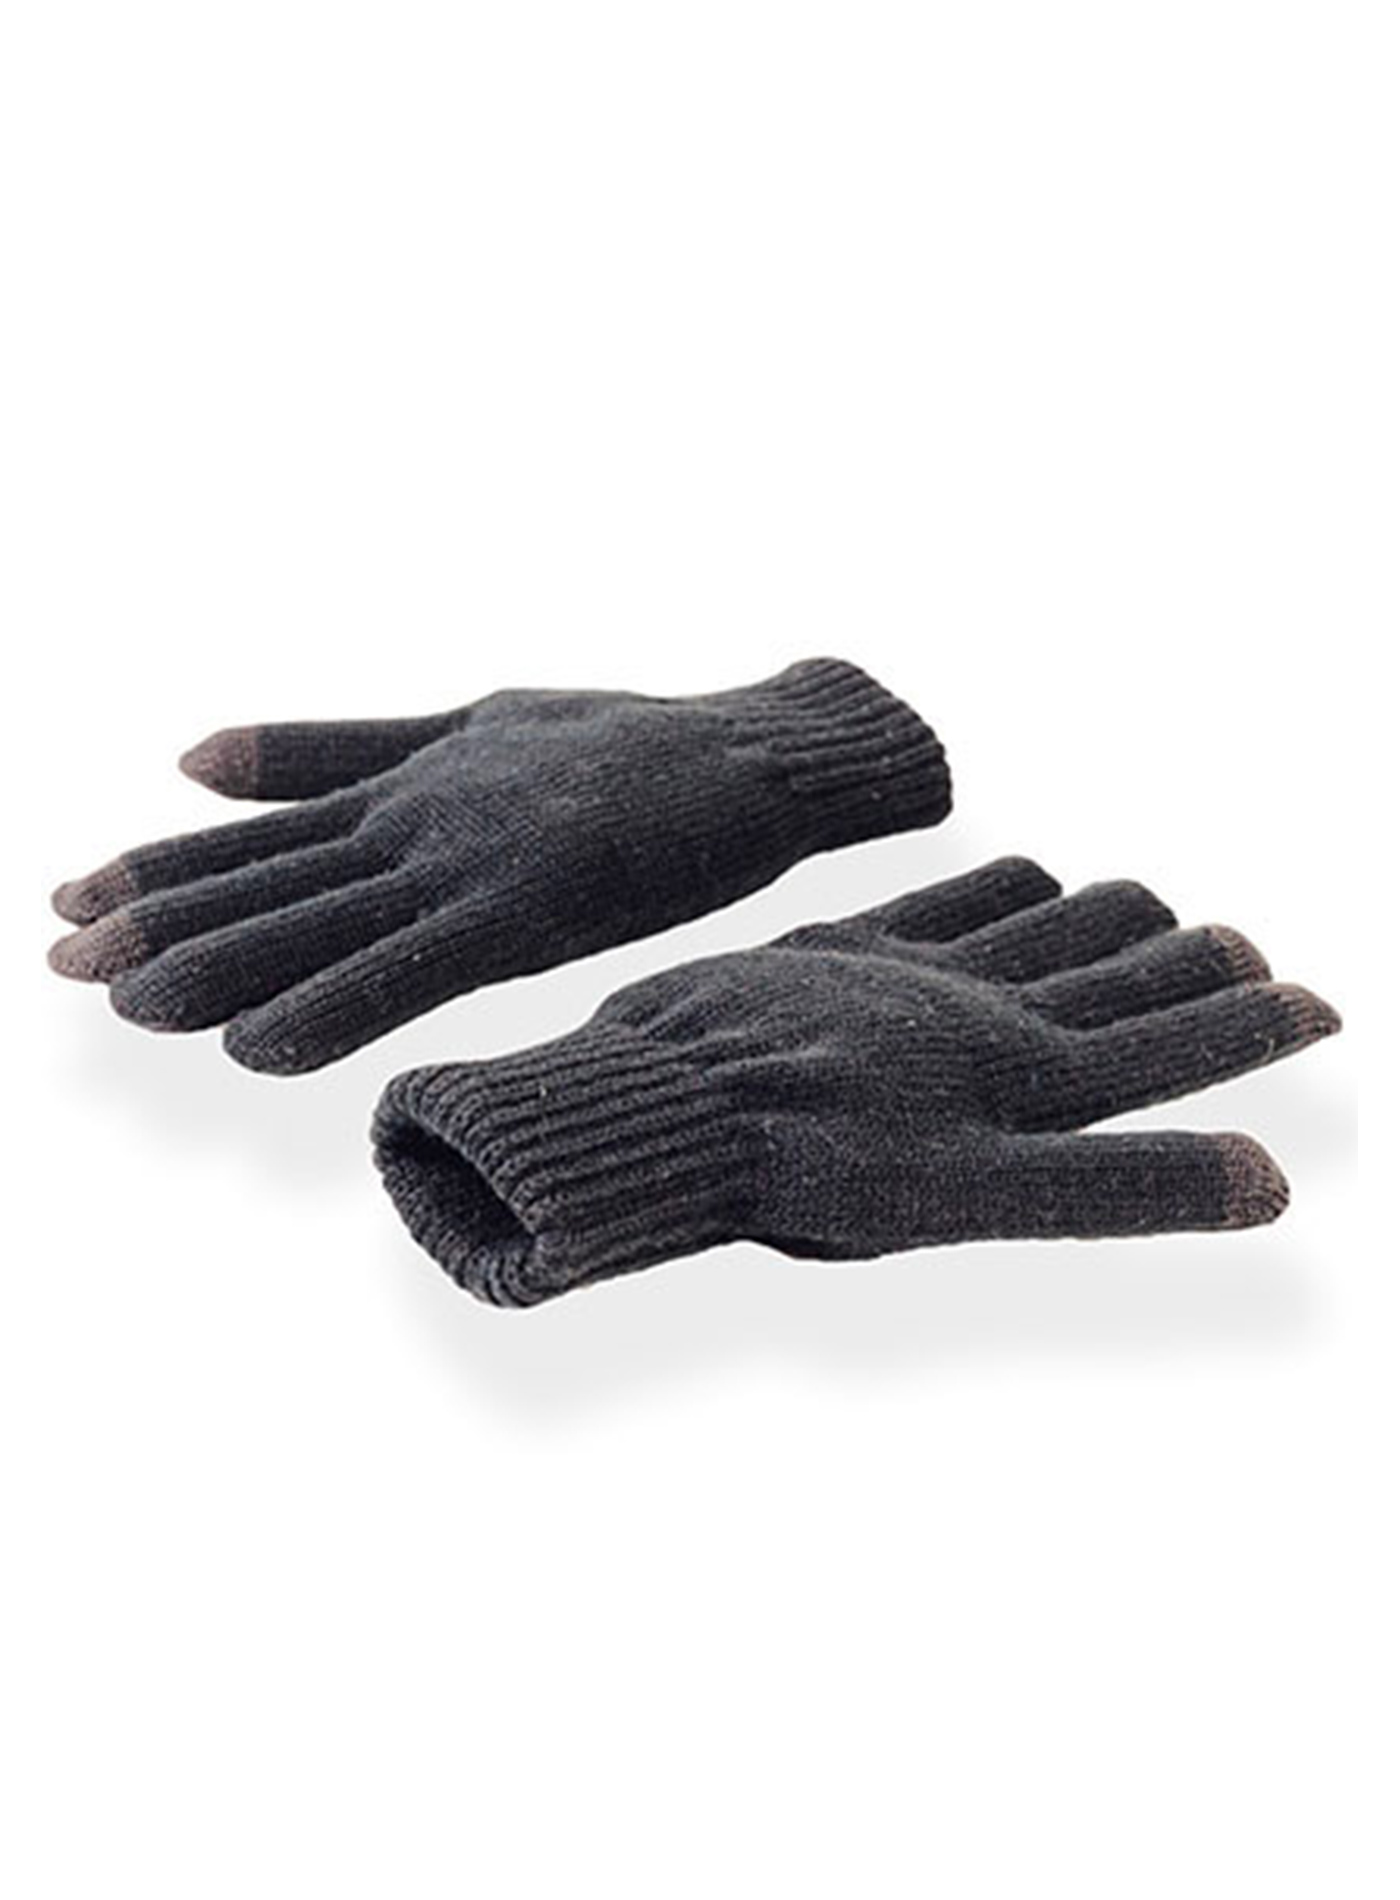 Unisex zimní dotykové rukavice Atlantis Touch - Šedá L/XL